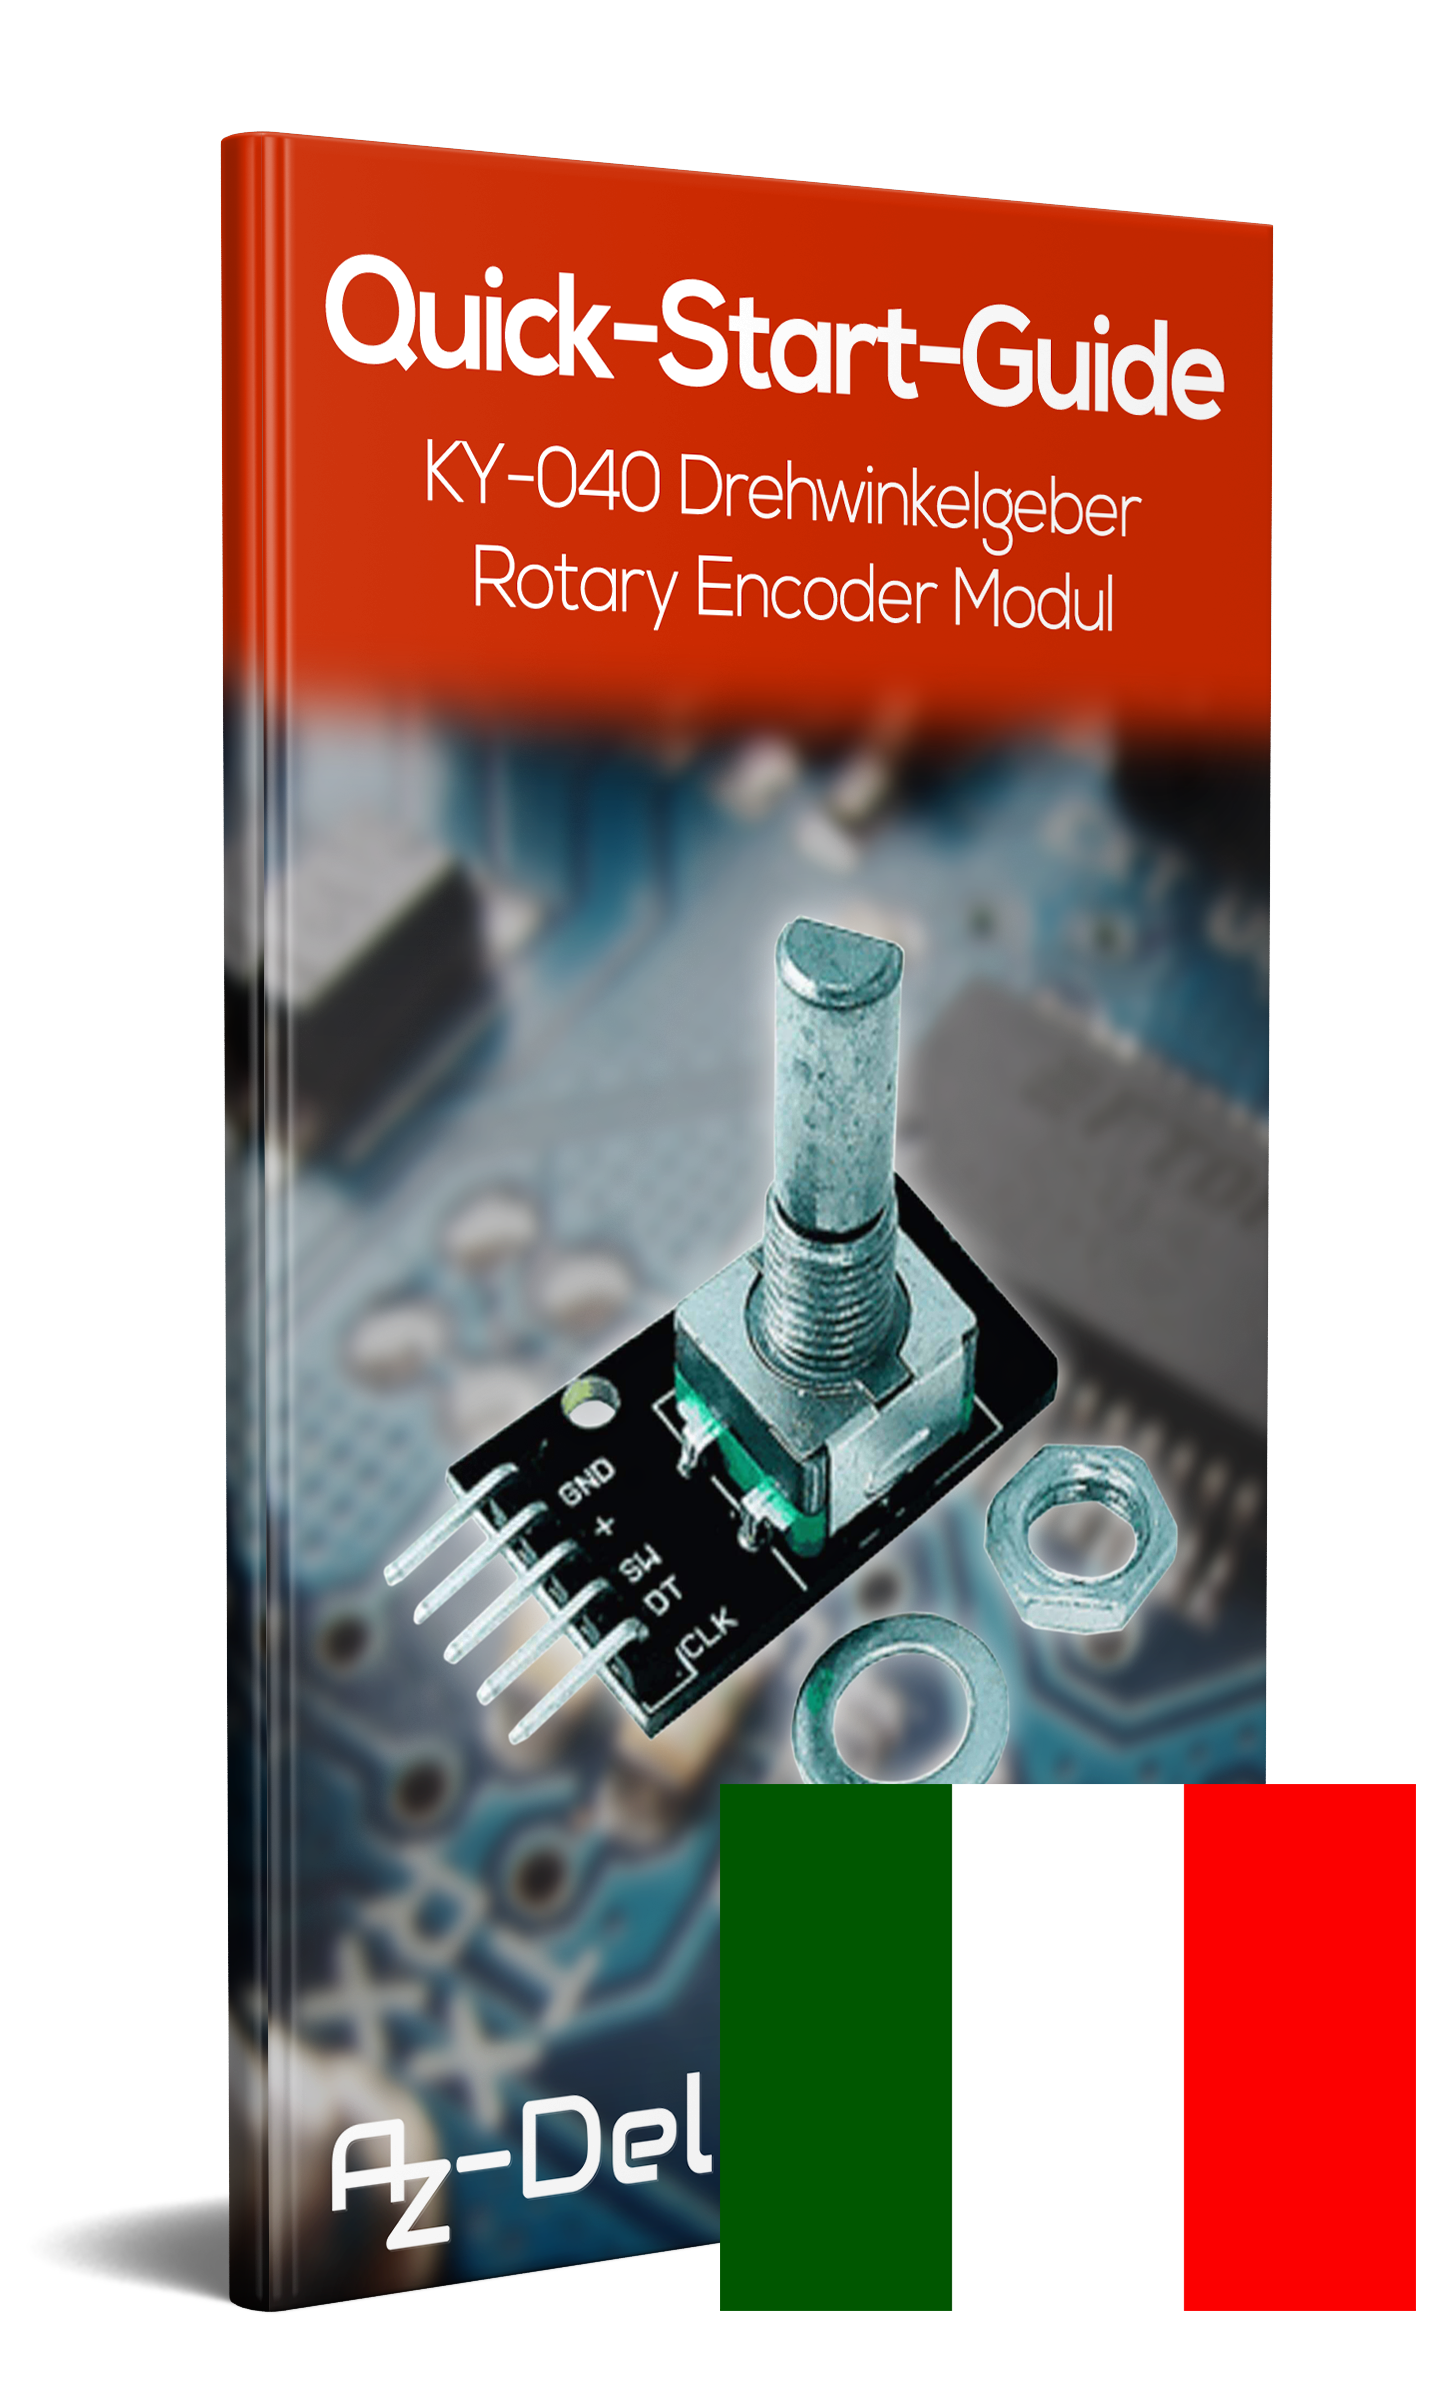 KY-040 Drehwinkelgeber Drehgeber Rotary Encoder Modul